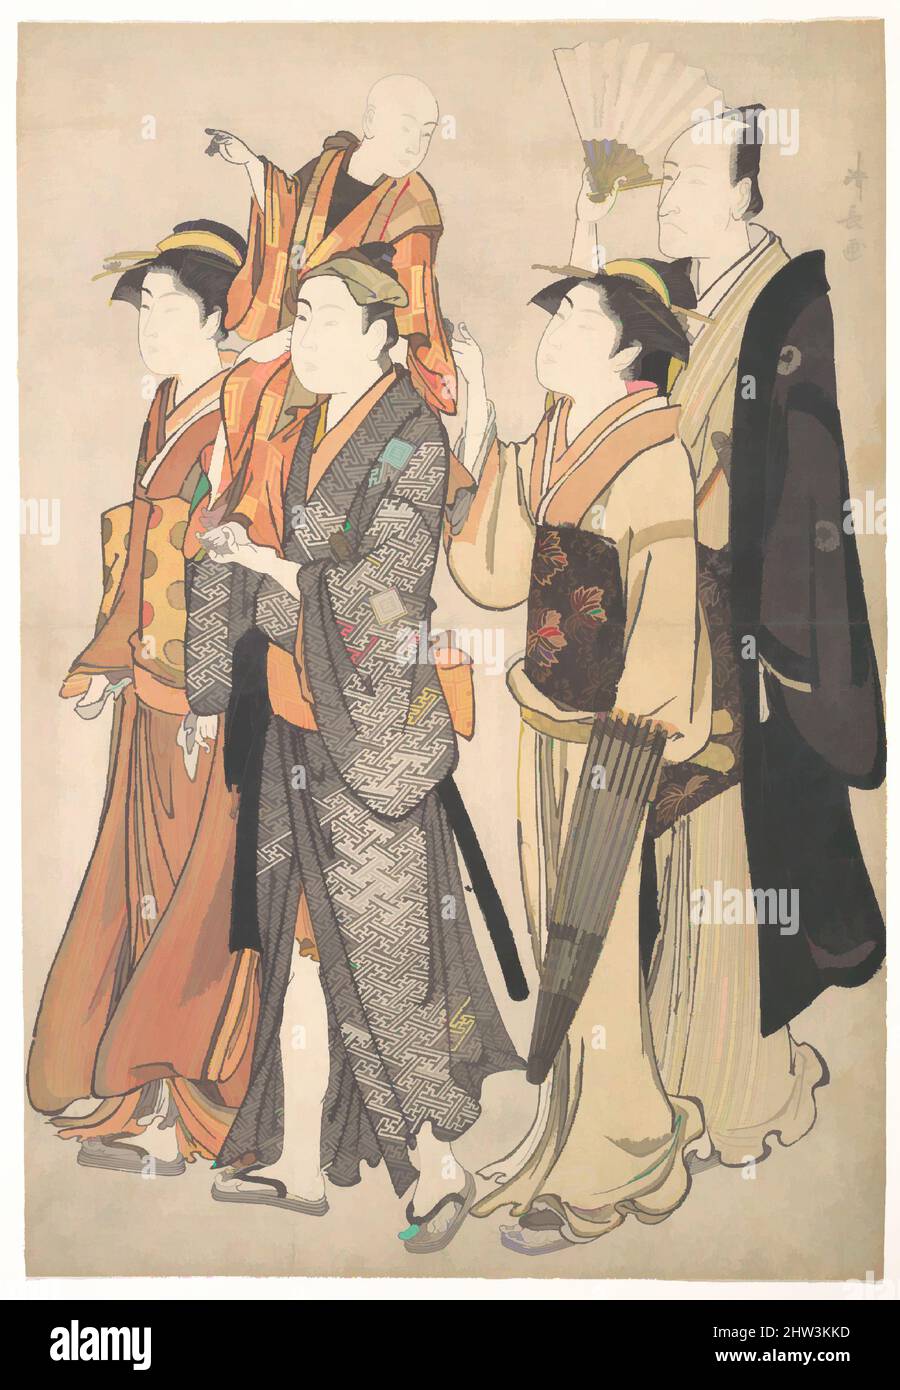 Art inspiré par Ichikawa Danjūrō V et sa famille, époque Edo (1615–1868), 1782, Japon, imprimé polychrome sur bois; encre et couleur sur papier, 14 5/8 x 10 cm (37,1 x 25,4cm), Prints, Torii Kiyonaga (japonais, 1752–1815), Kiyonaga dépeint Danjūrō V et sa famille lors d'une sortie vers un sanctuaire, oeuvres classiques modernisées par Artotop avec une touche de modernité. Formes, couleur et valeur, impact visuel accrocheur sur l'art émotions par la liberté d'œuvres d'art d'une manière contemporaine. Un message intemporel qui cherche une nouvelle direction créative. Artistes qui se tournent vers le support numérique et créent le NFT Artotop Banque D'Images